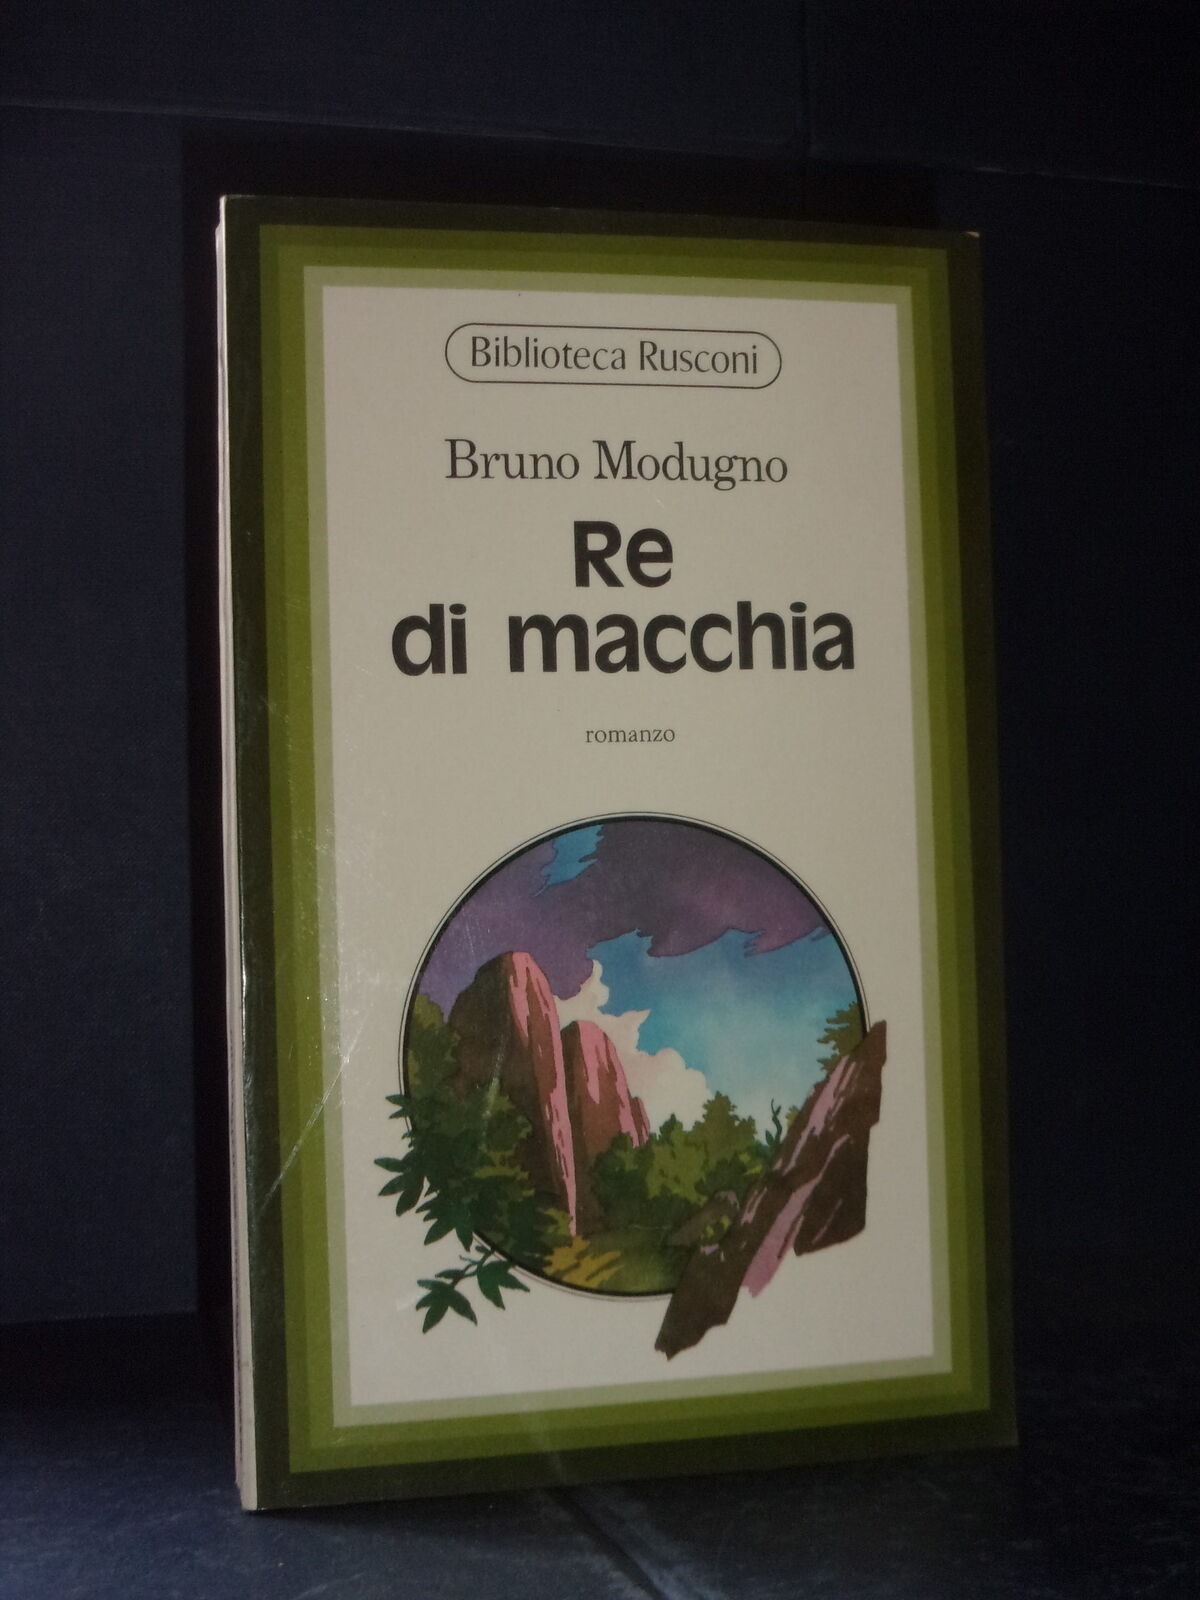 Bruno Modugno ‒ Re di macchia (Rusconi, Milano 1976)